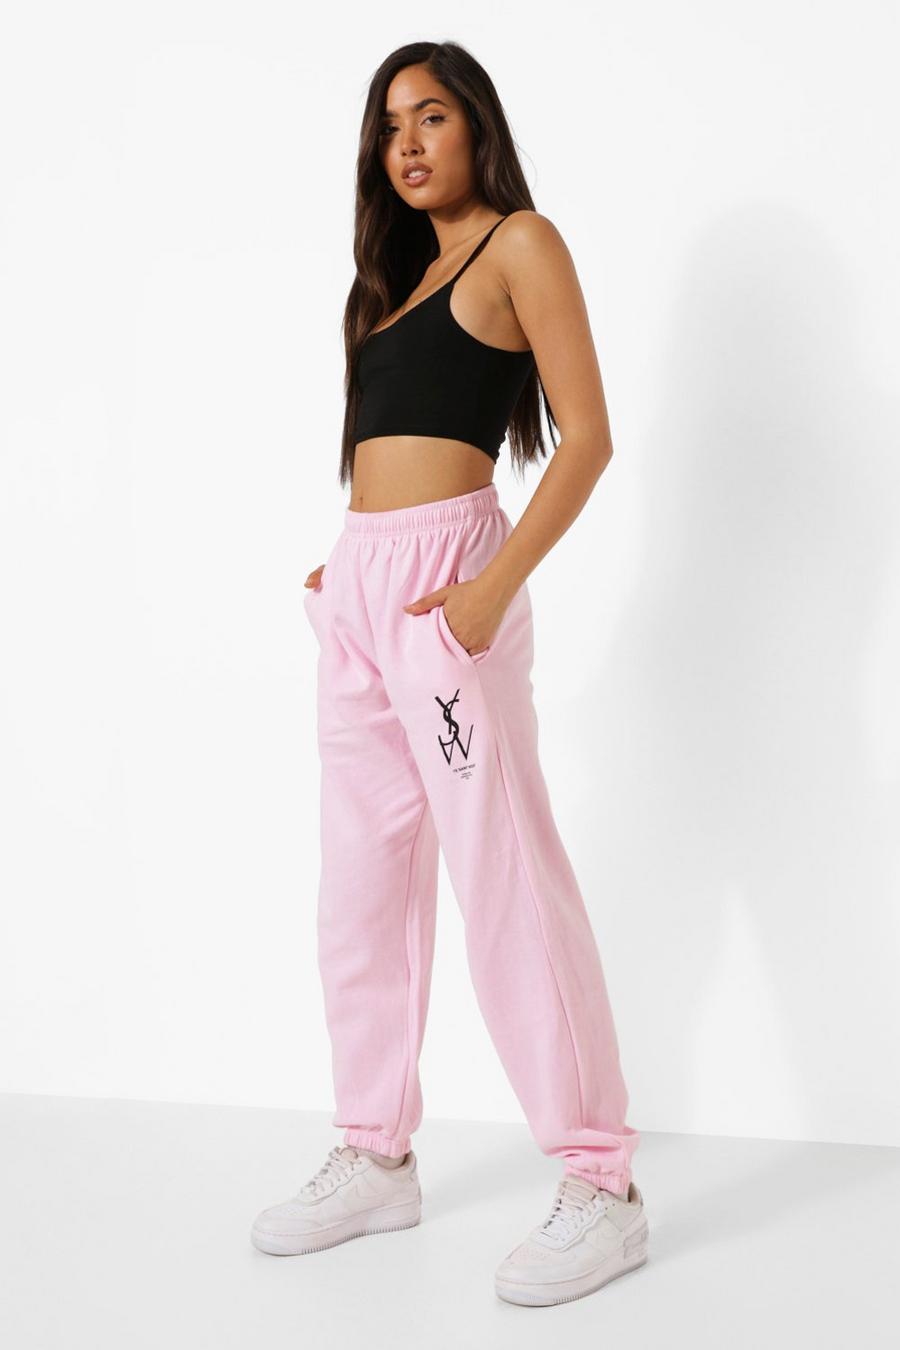 Pantaloni tuta oversize con stampa Ysw, Light pink image number 1